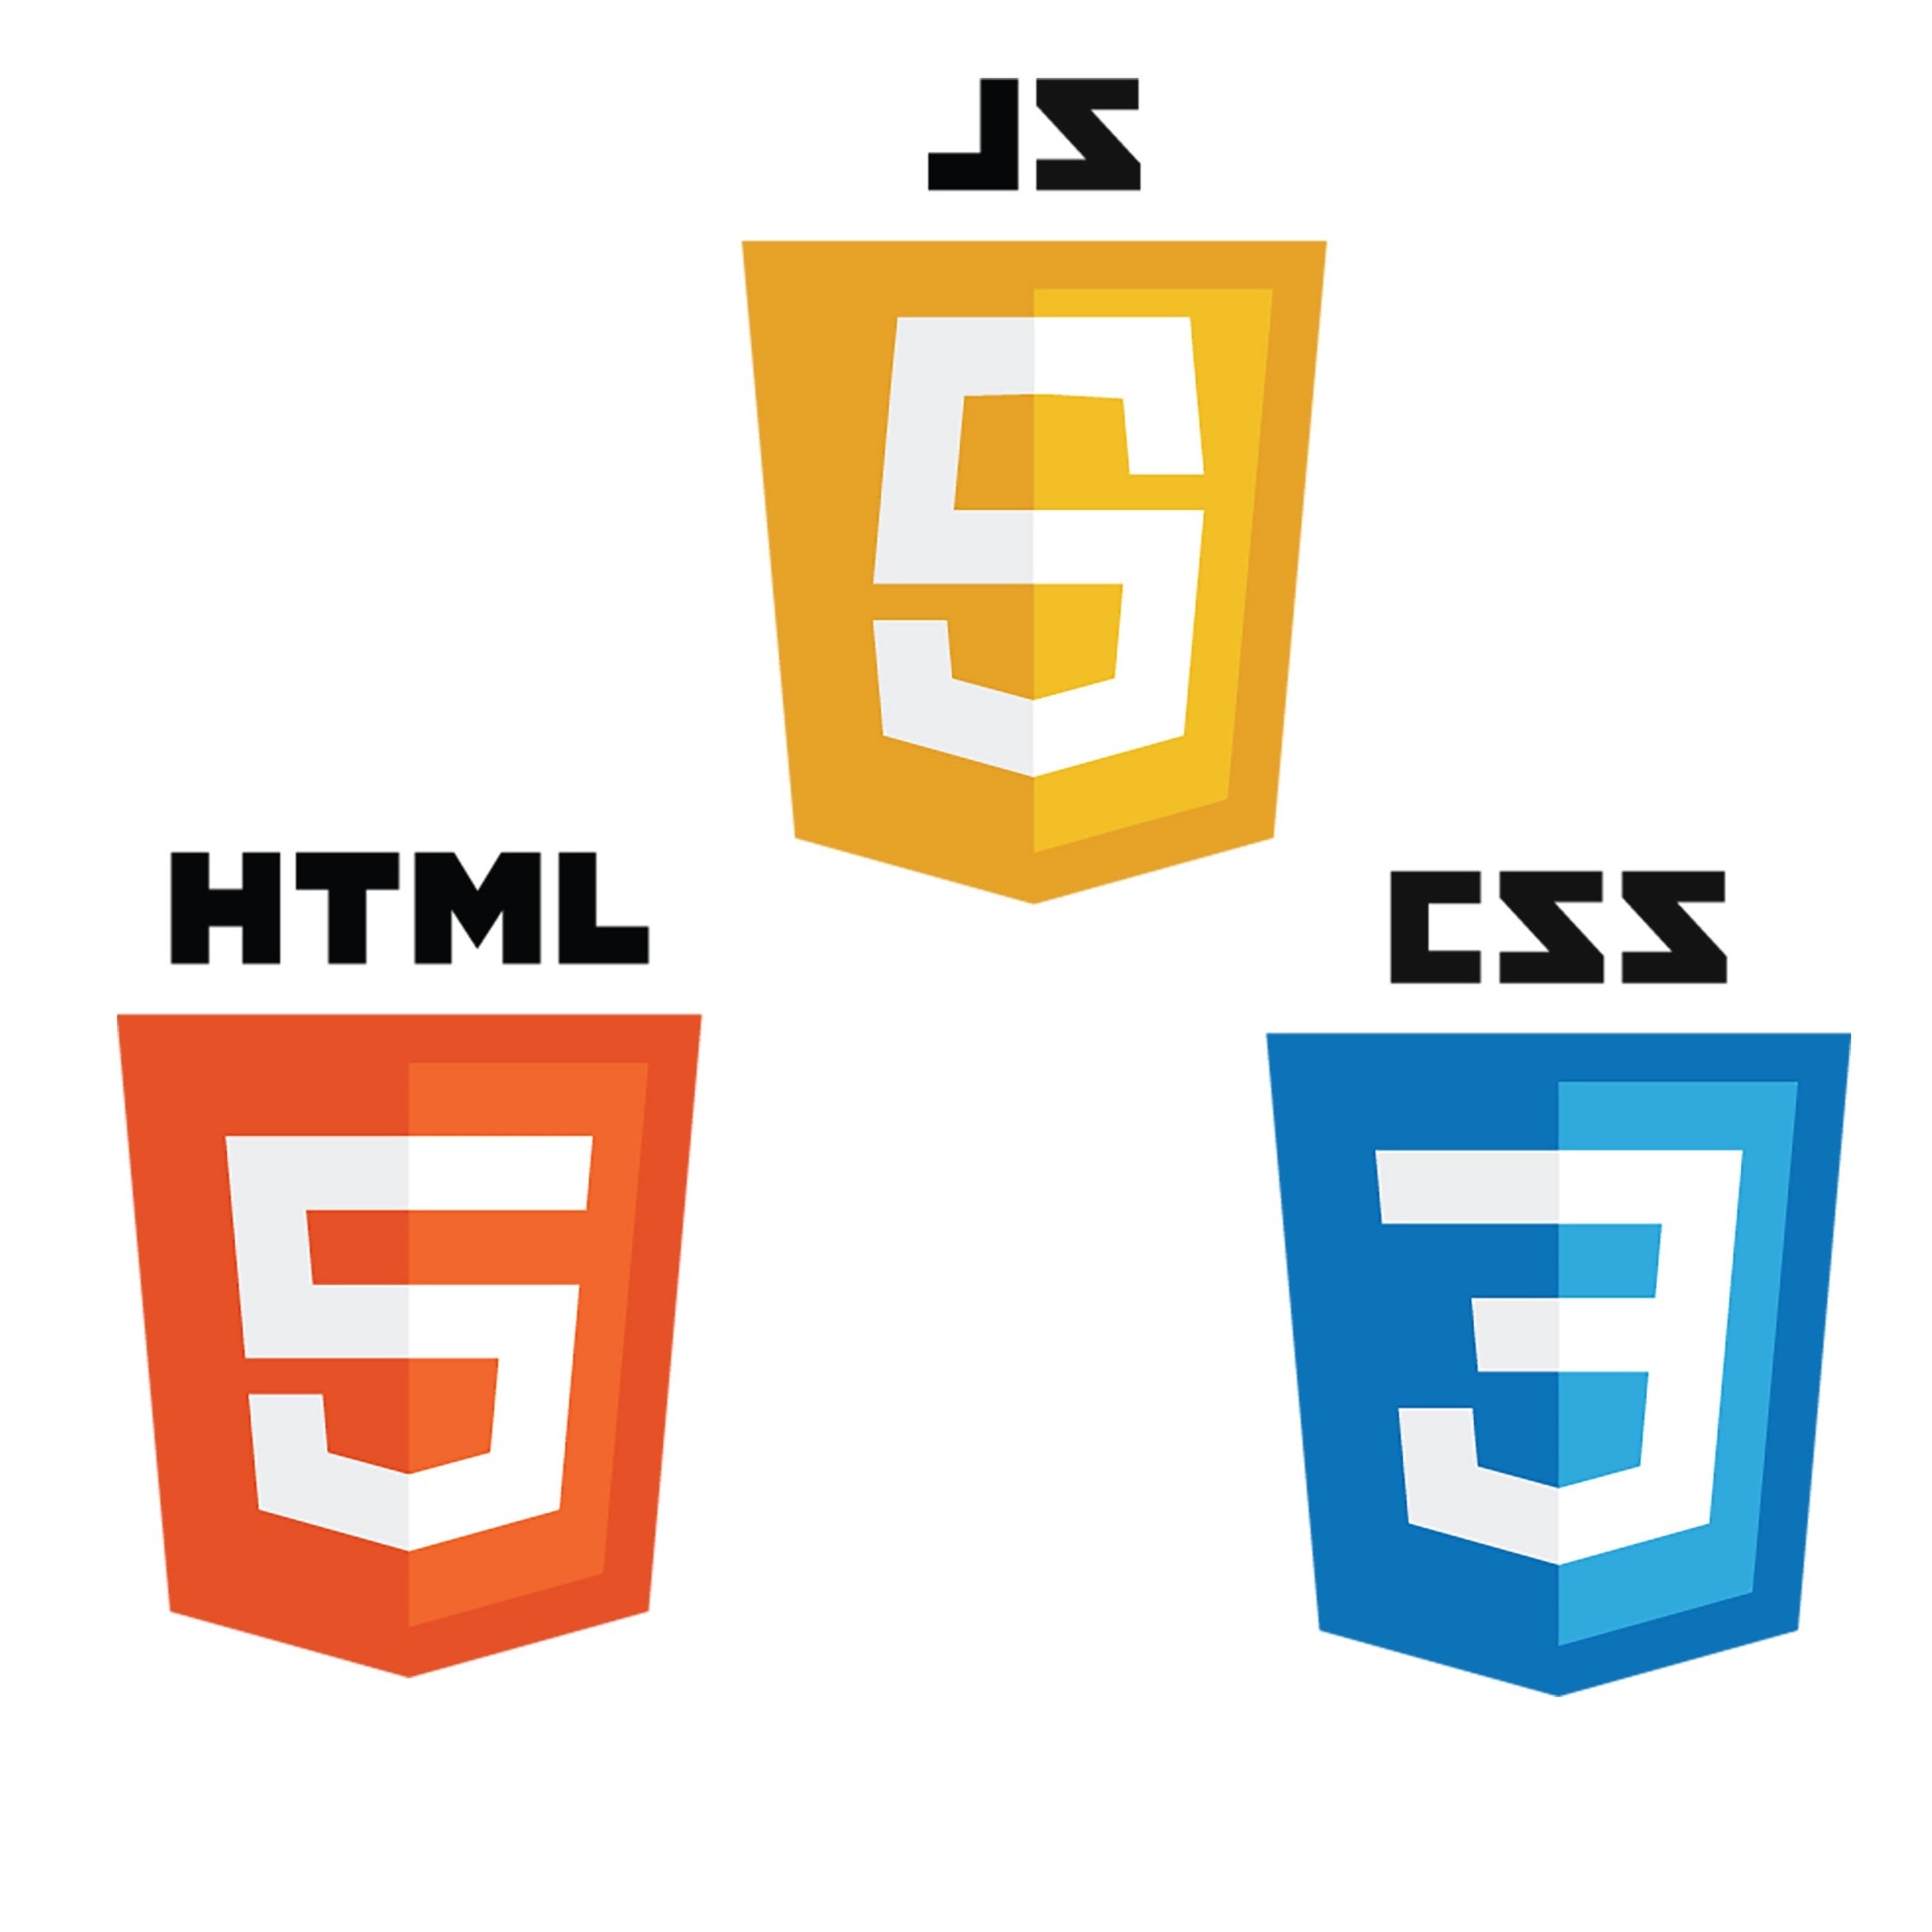 HTML, CSS and JS logos